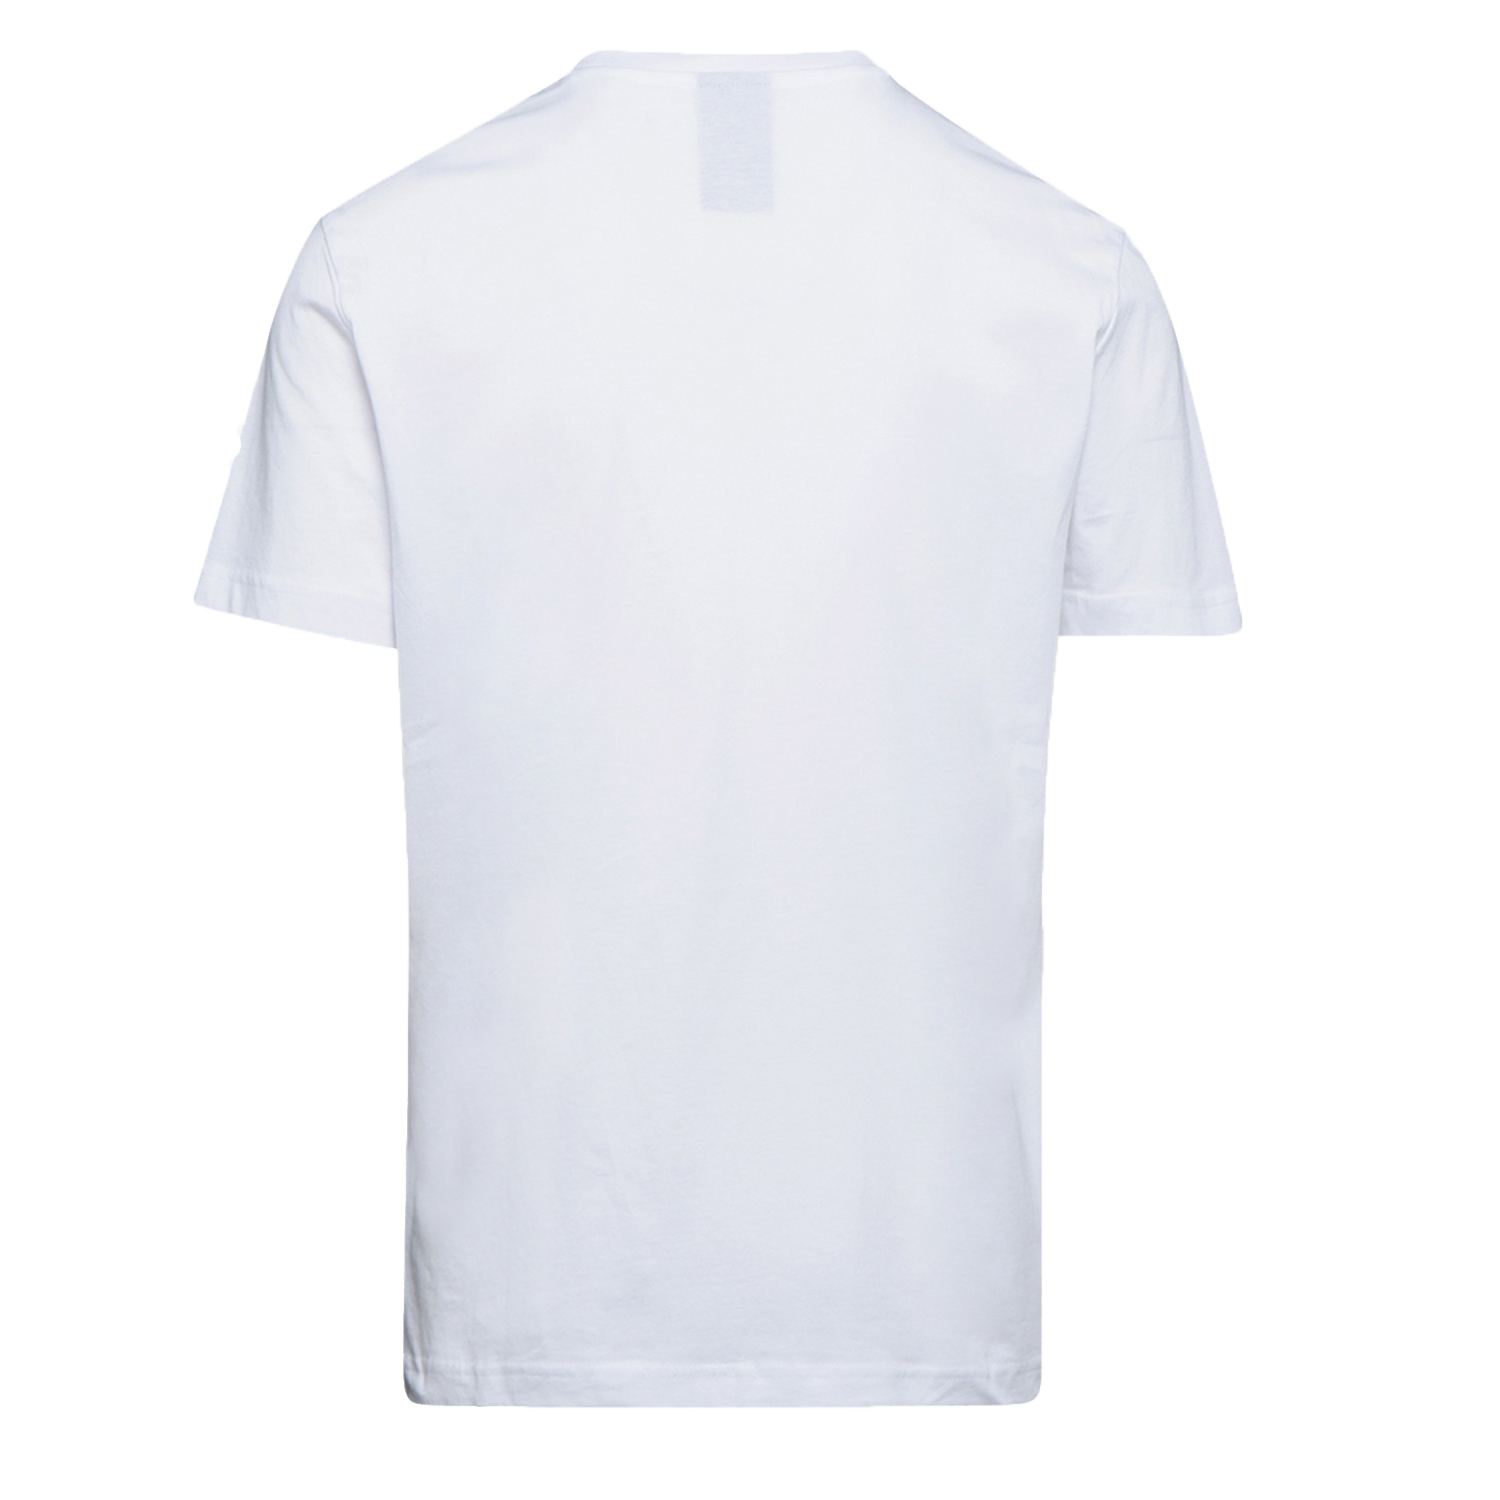 Tee-shirt de travail GRAPHIC ORGANIC à manches courtes blanc TXL - DIADORA SPA - 702.176914